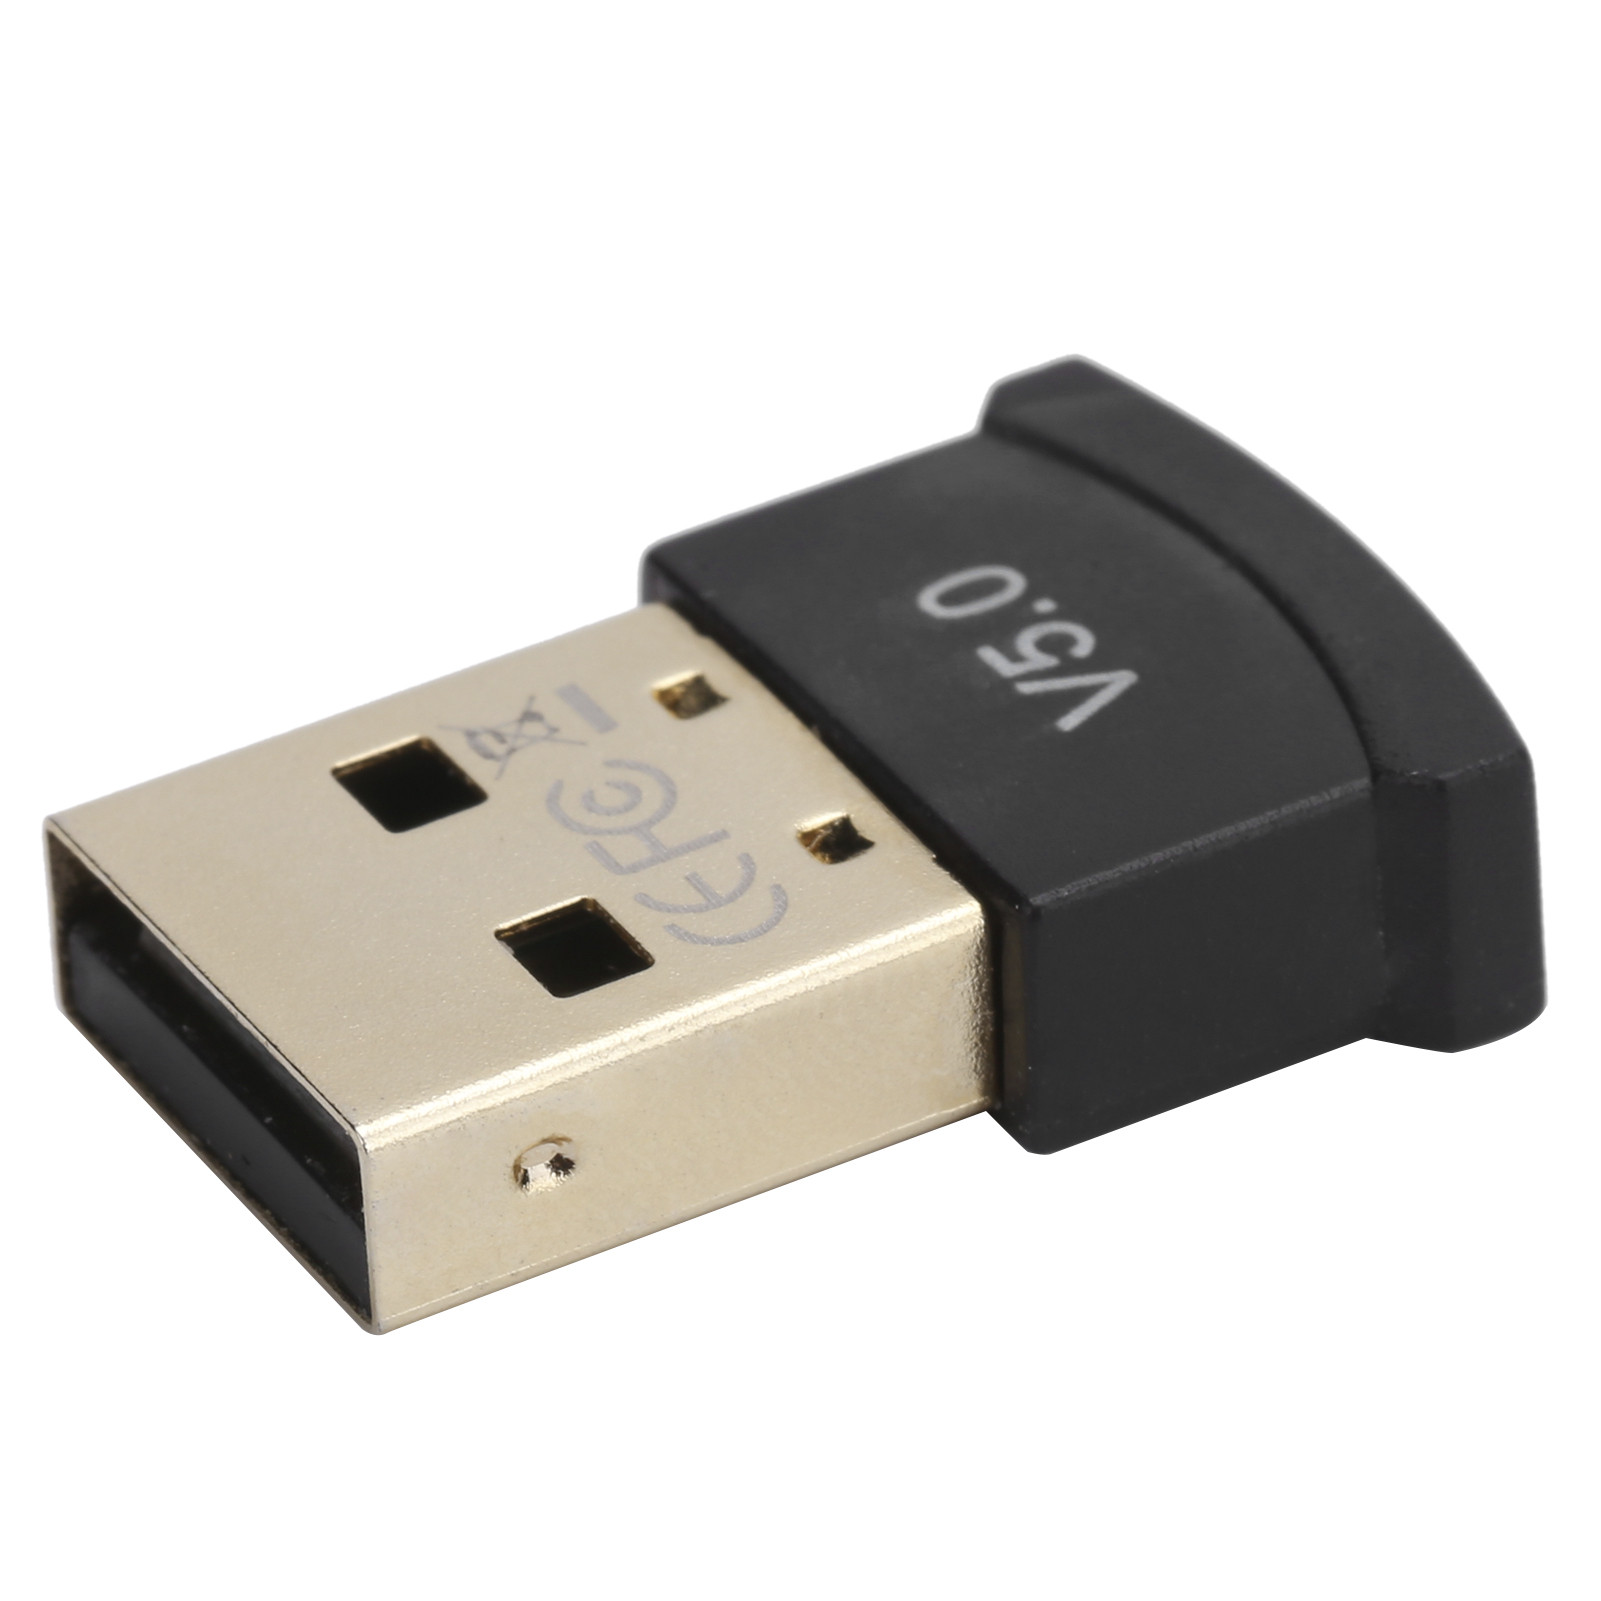 Acheter une clé USB Bluetooth / un adaptateur ? Demain à la maison